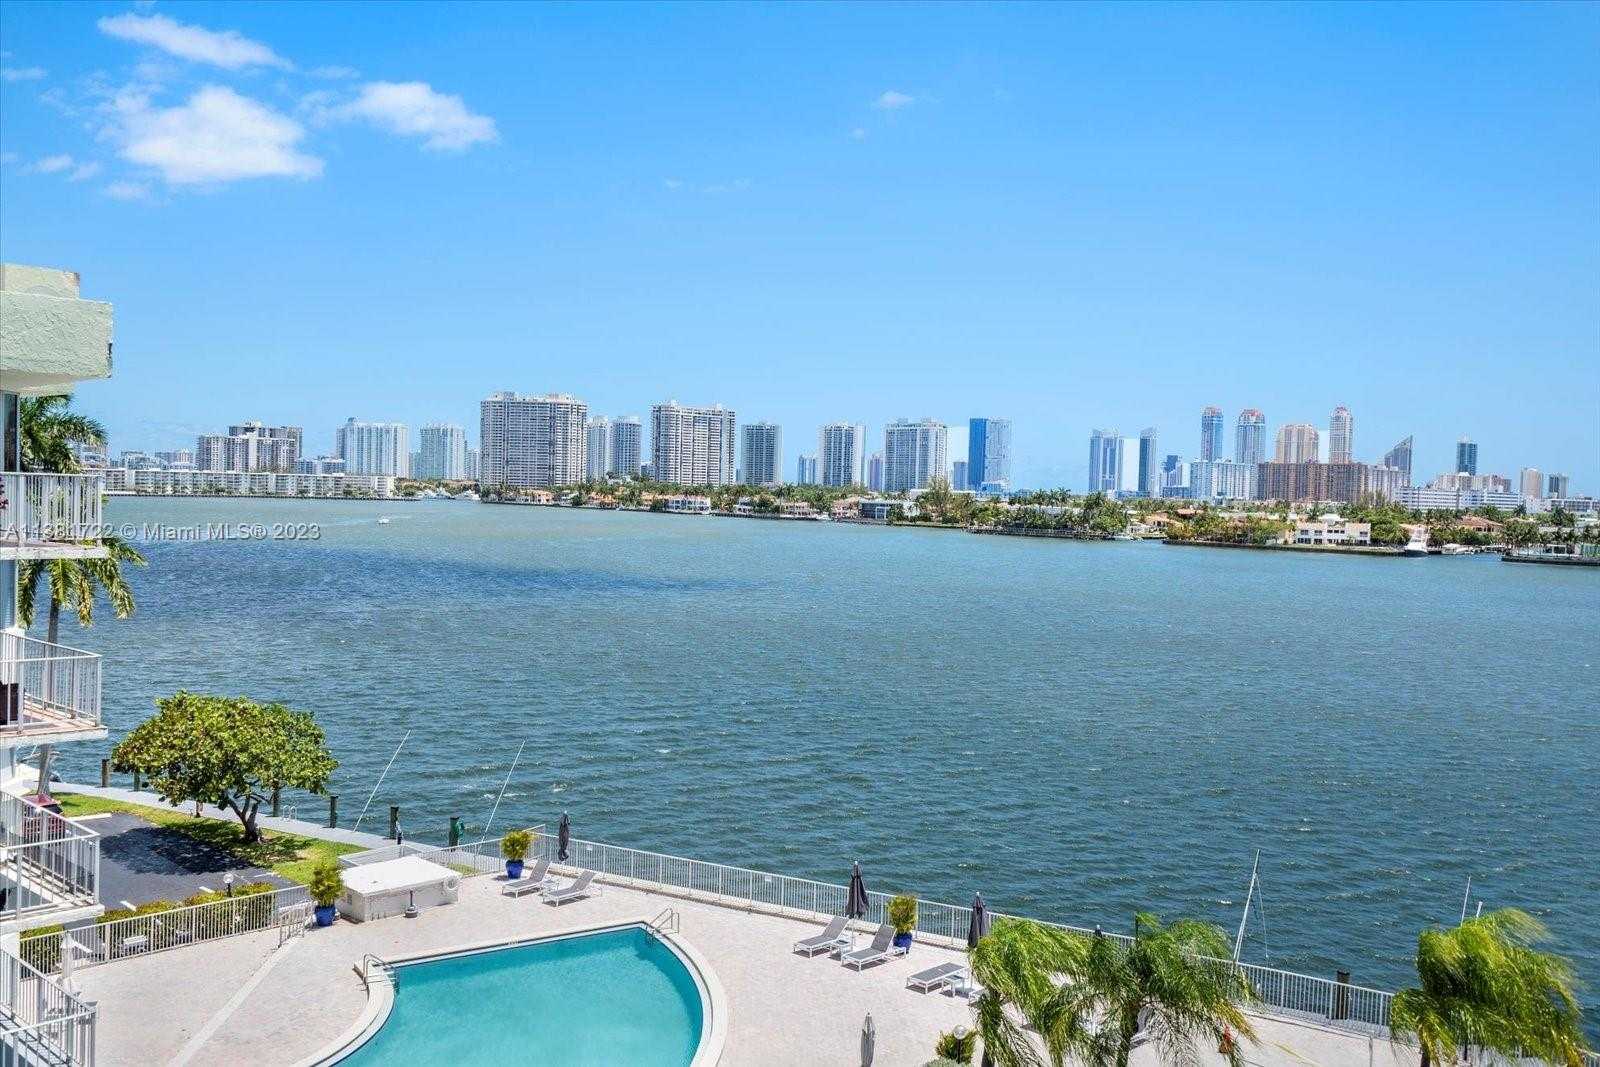 View North Miami Beach, FL 33160 condo